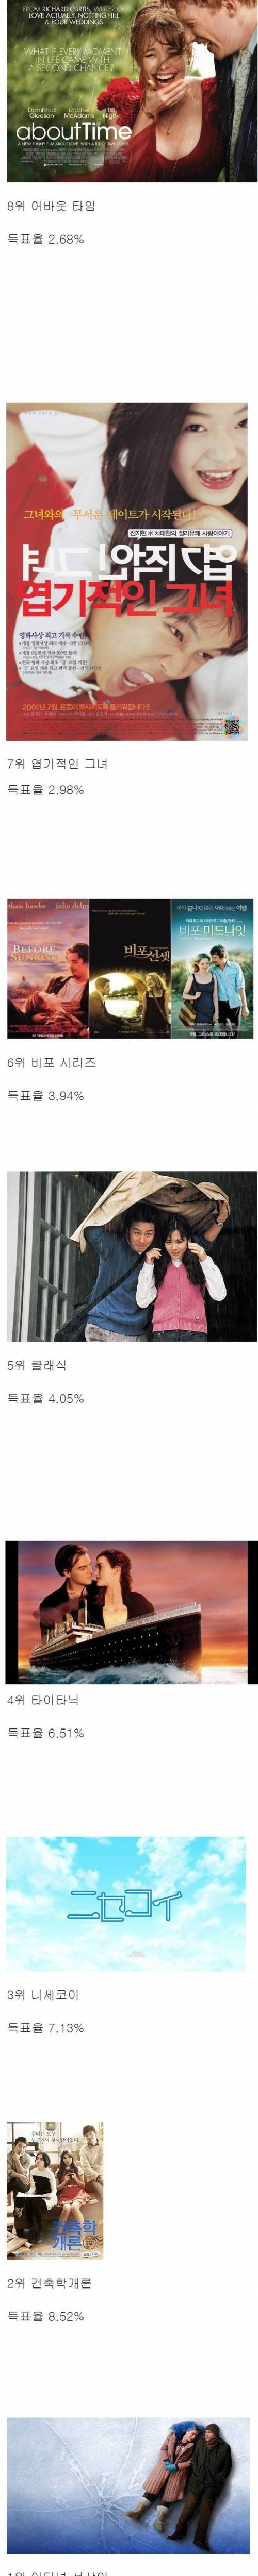 한국인 5만명이 뽑은 로맨스 영화 top15